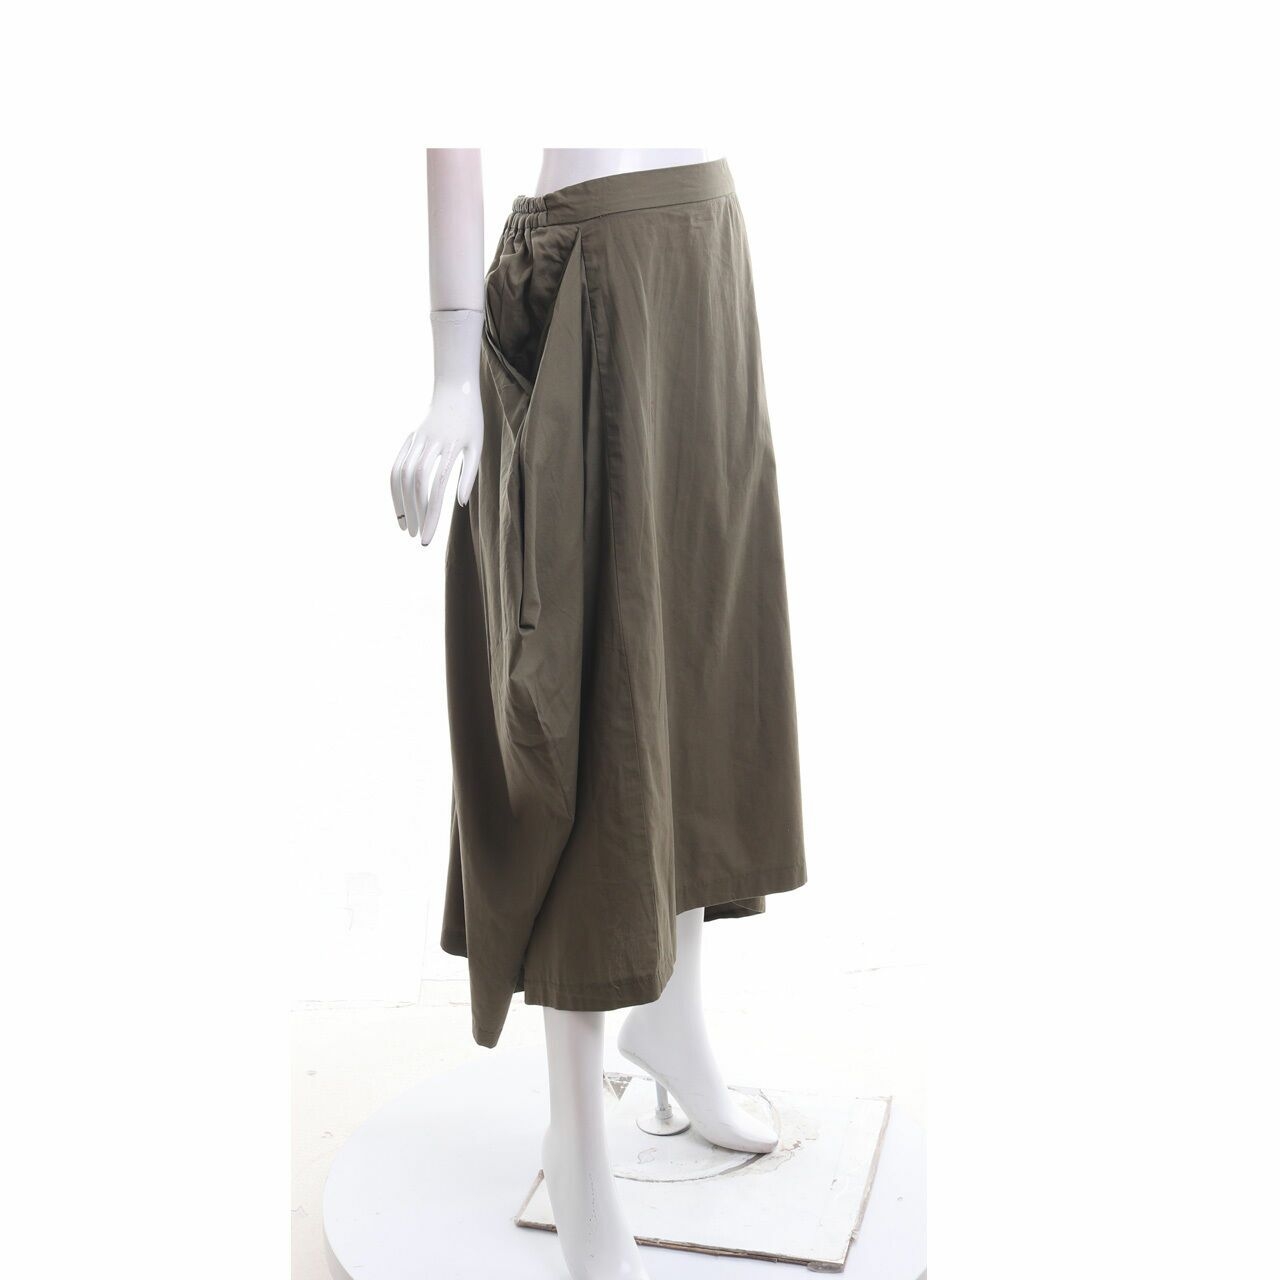 Maima Olive Maxi Skirt